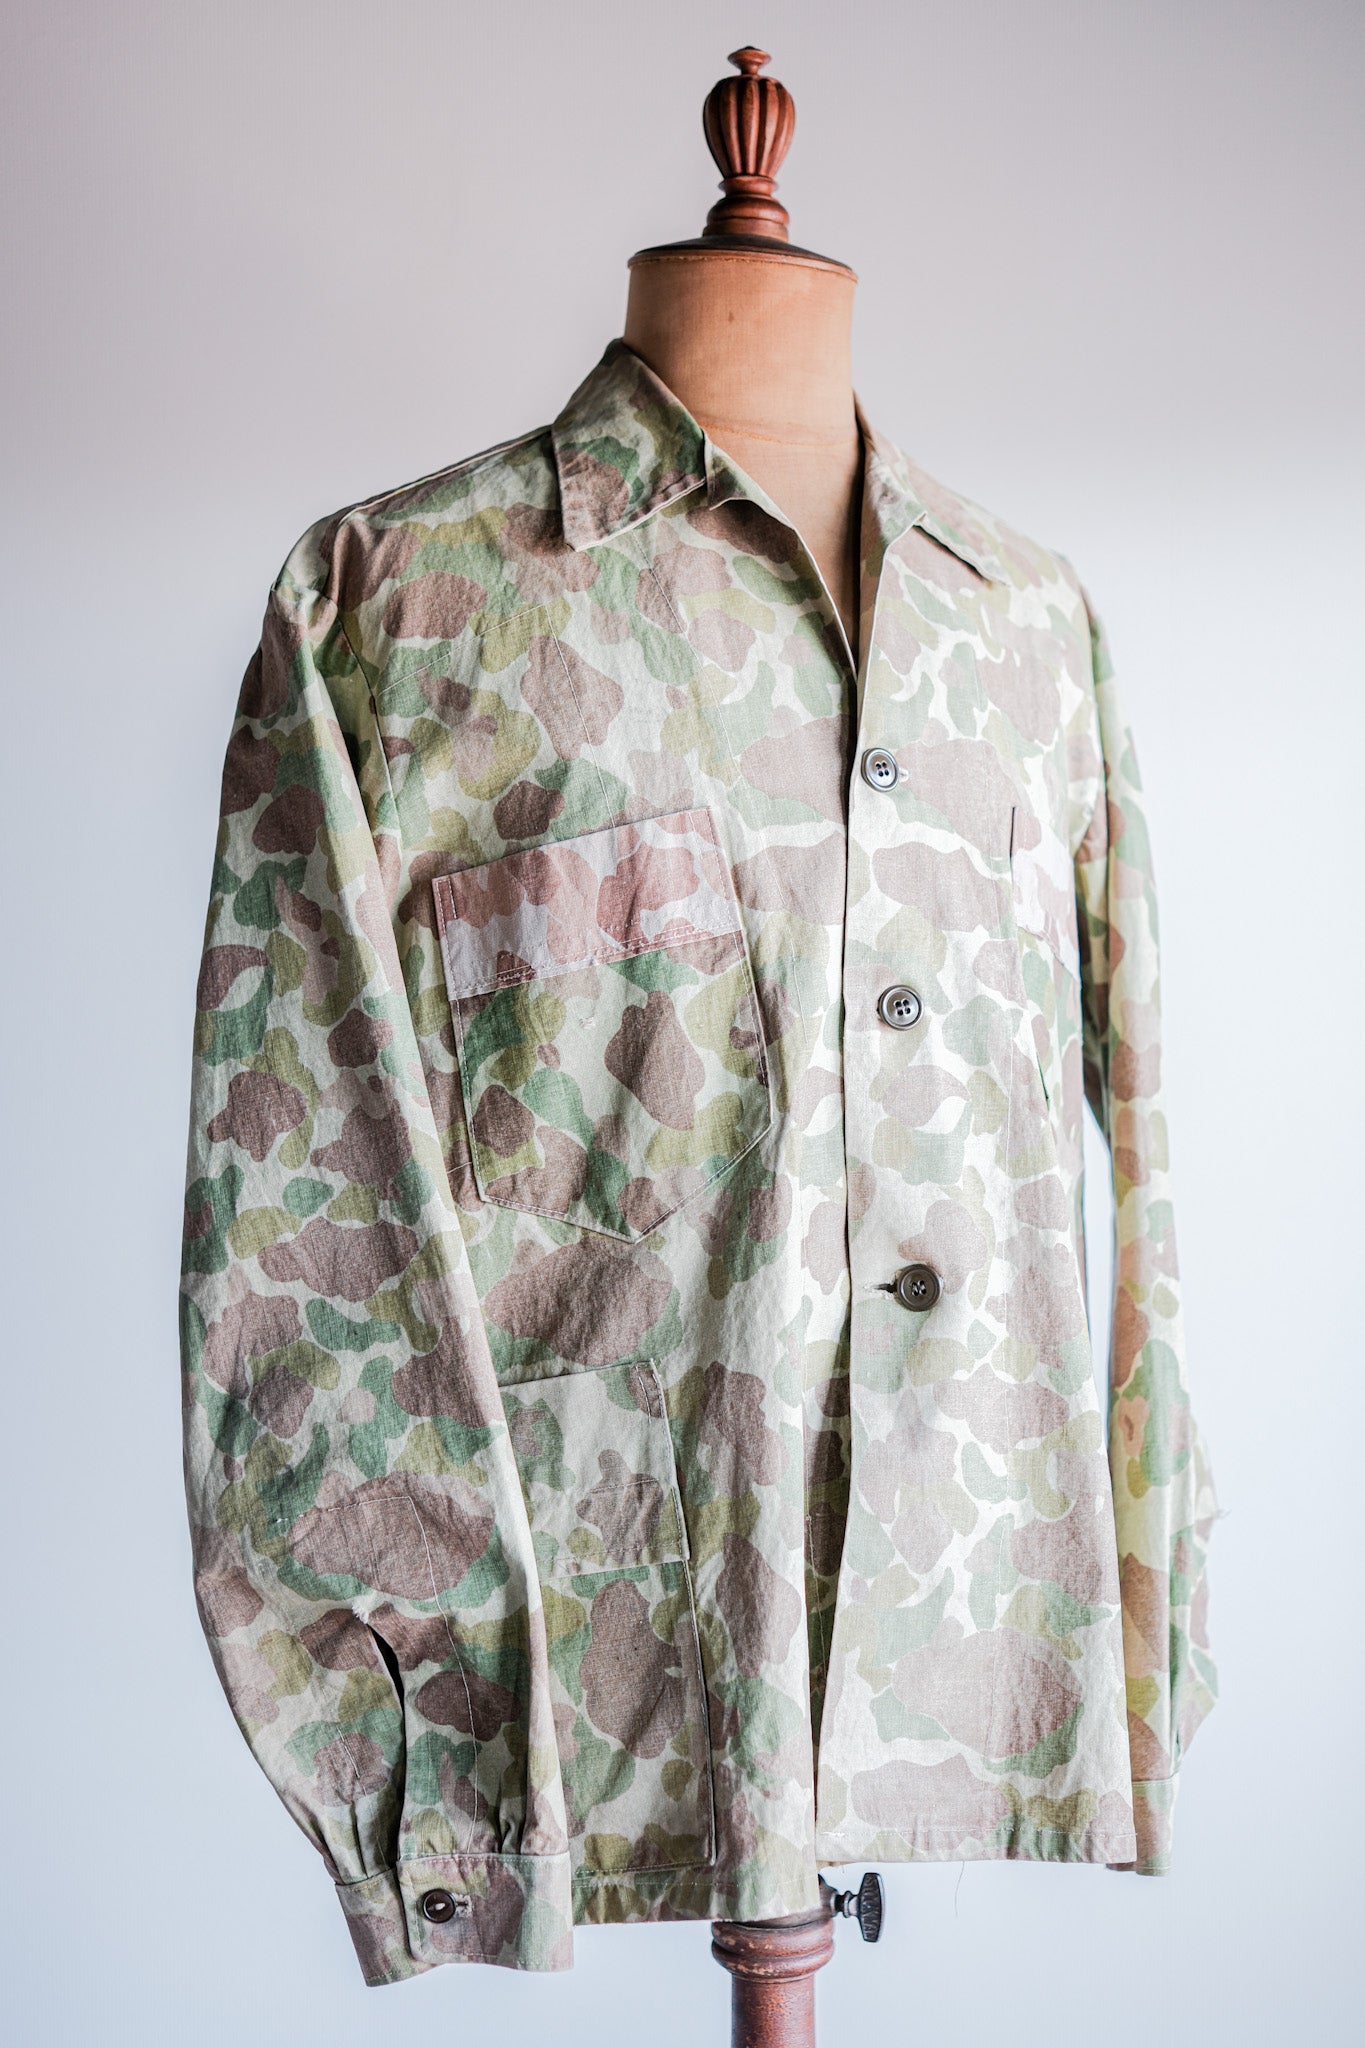 [〜50年代]美國復古佔領泰勒製造了青蛙偽裝夾克“ umis.m.c材料”